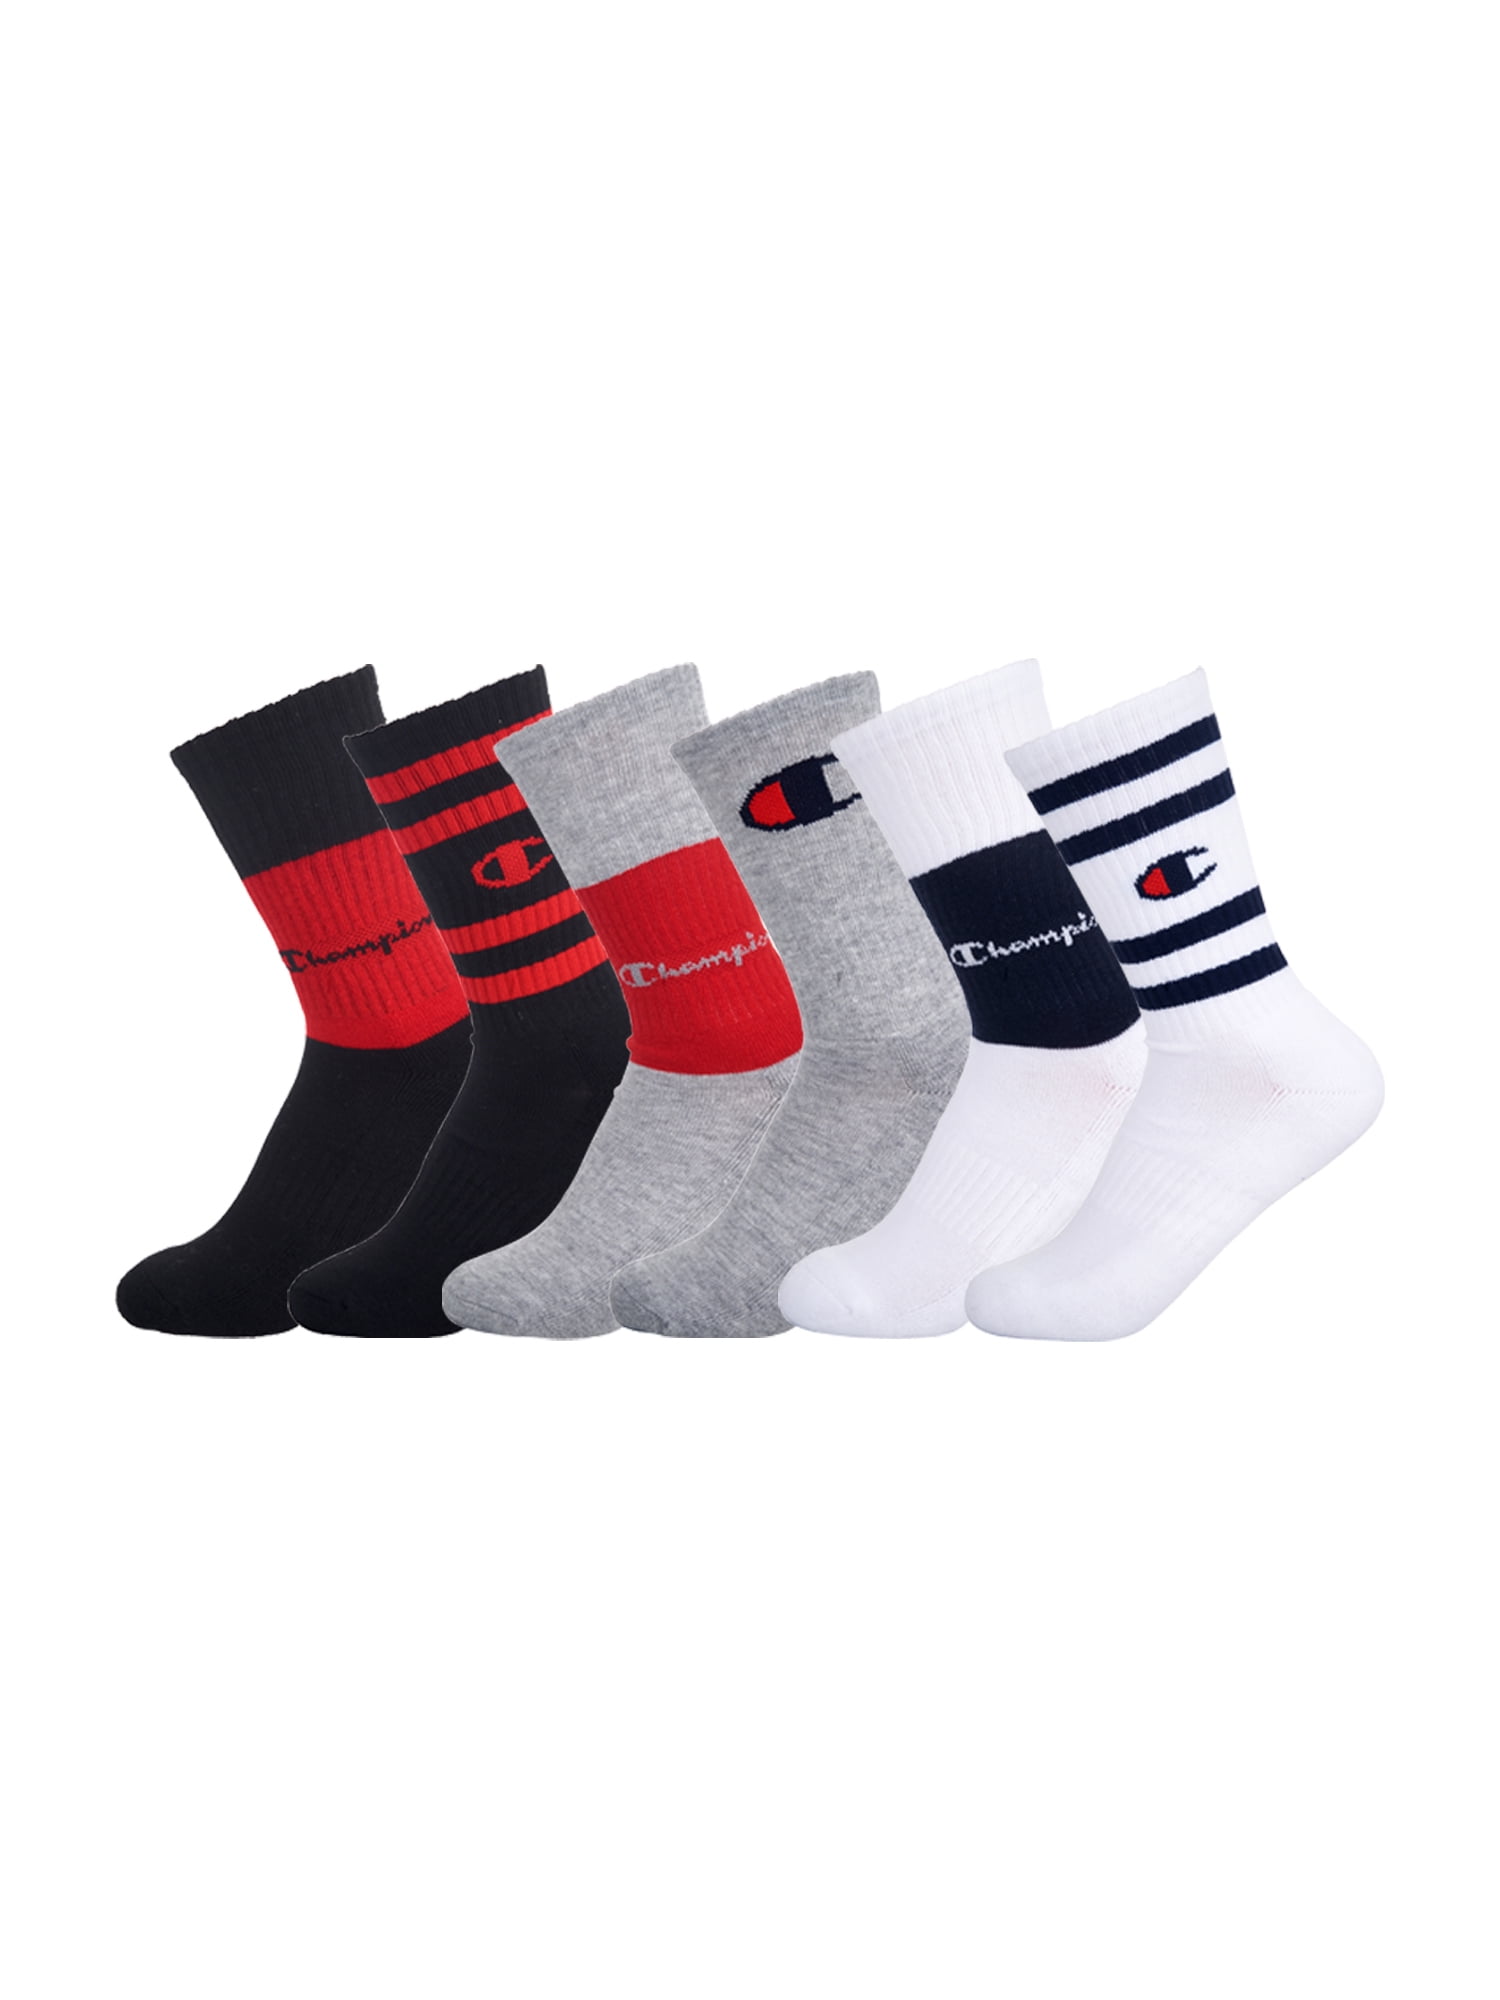 Champion Unisex Socks, 6 Pack Crew Socks, Sizes 7 - 11